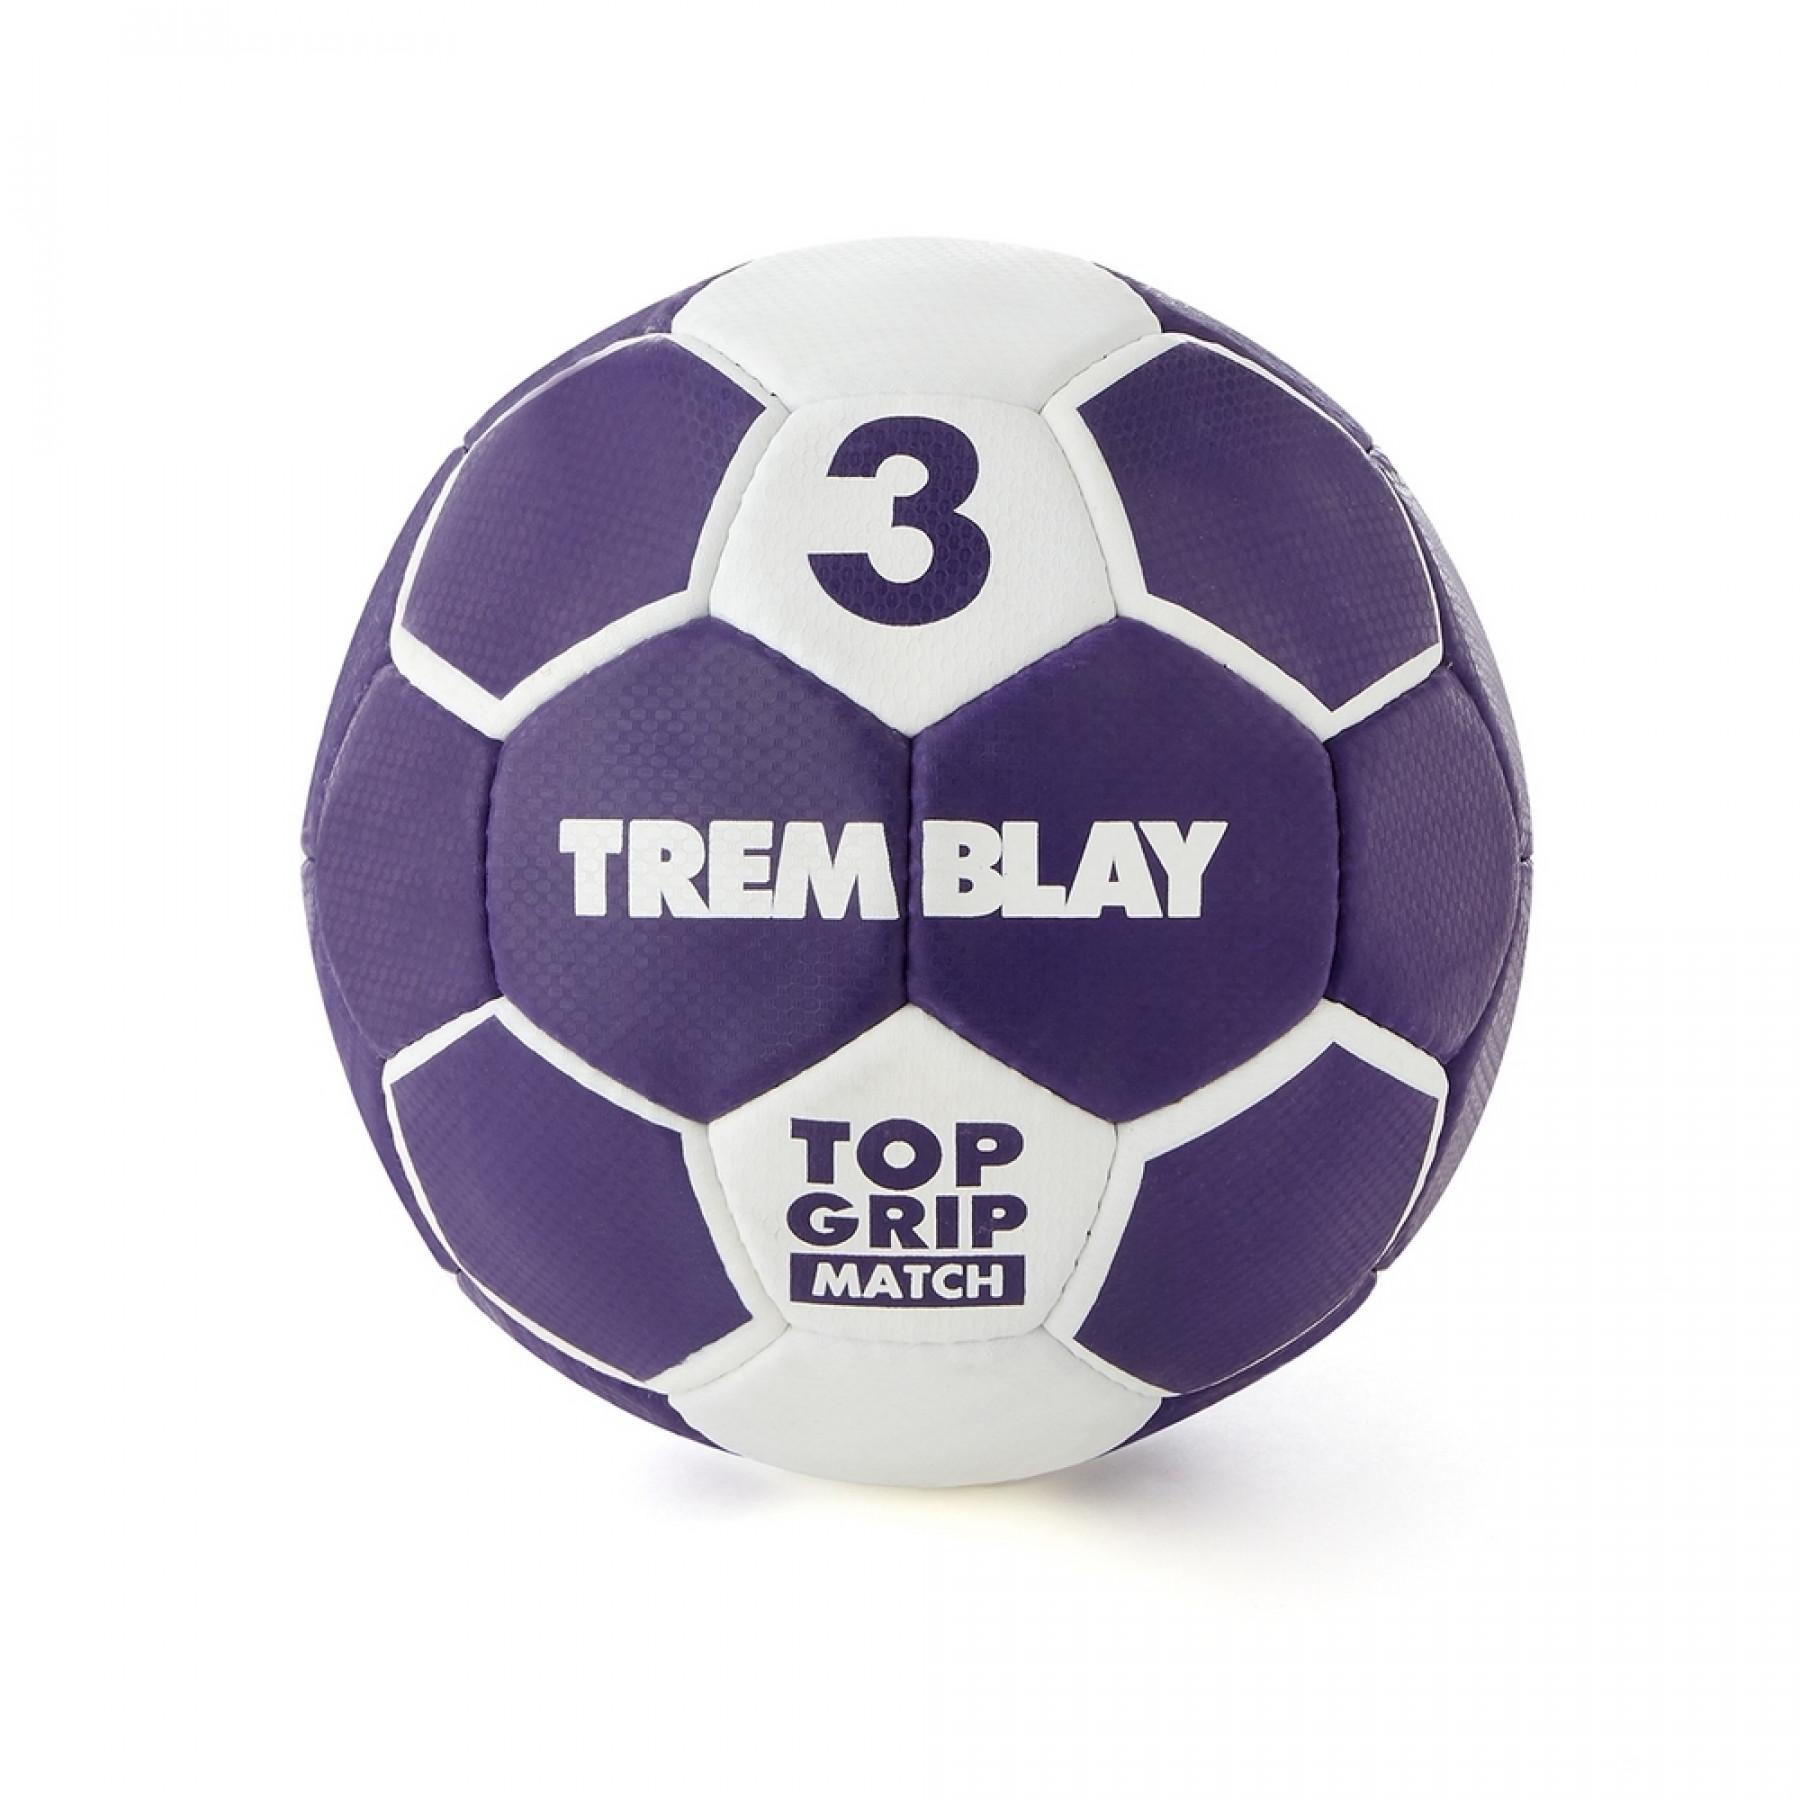 Piłka do piłki ręcznej Tremblay top grid 2nd generation